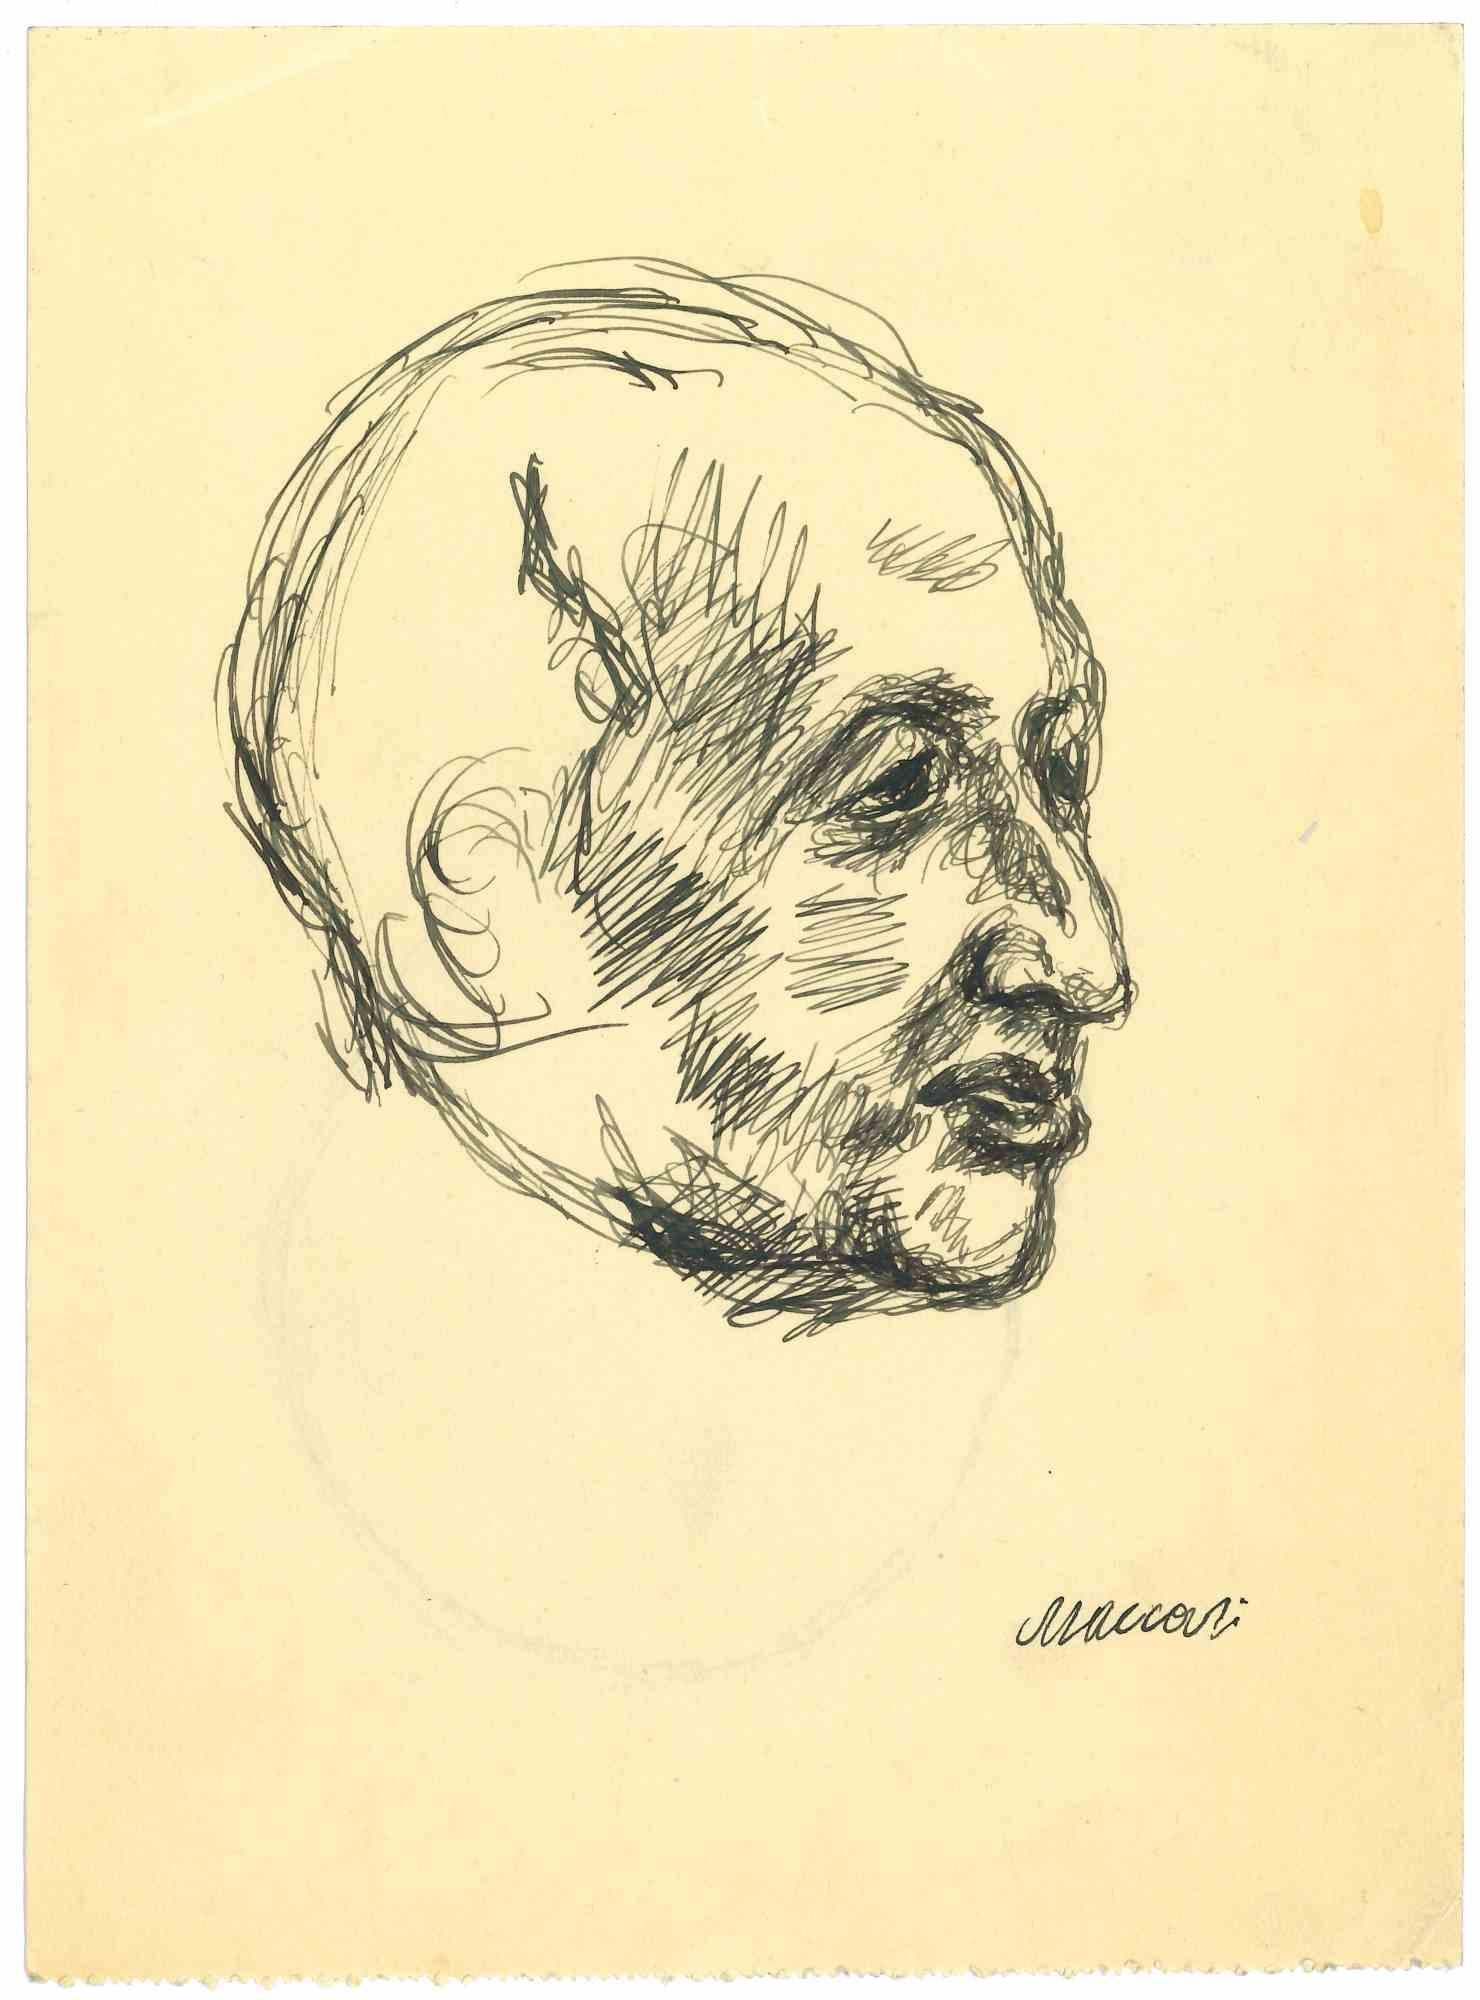 Das Profil – Zeichnung von Mino Maccari – 1950er Jahre